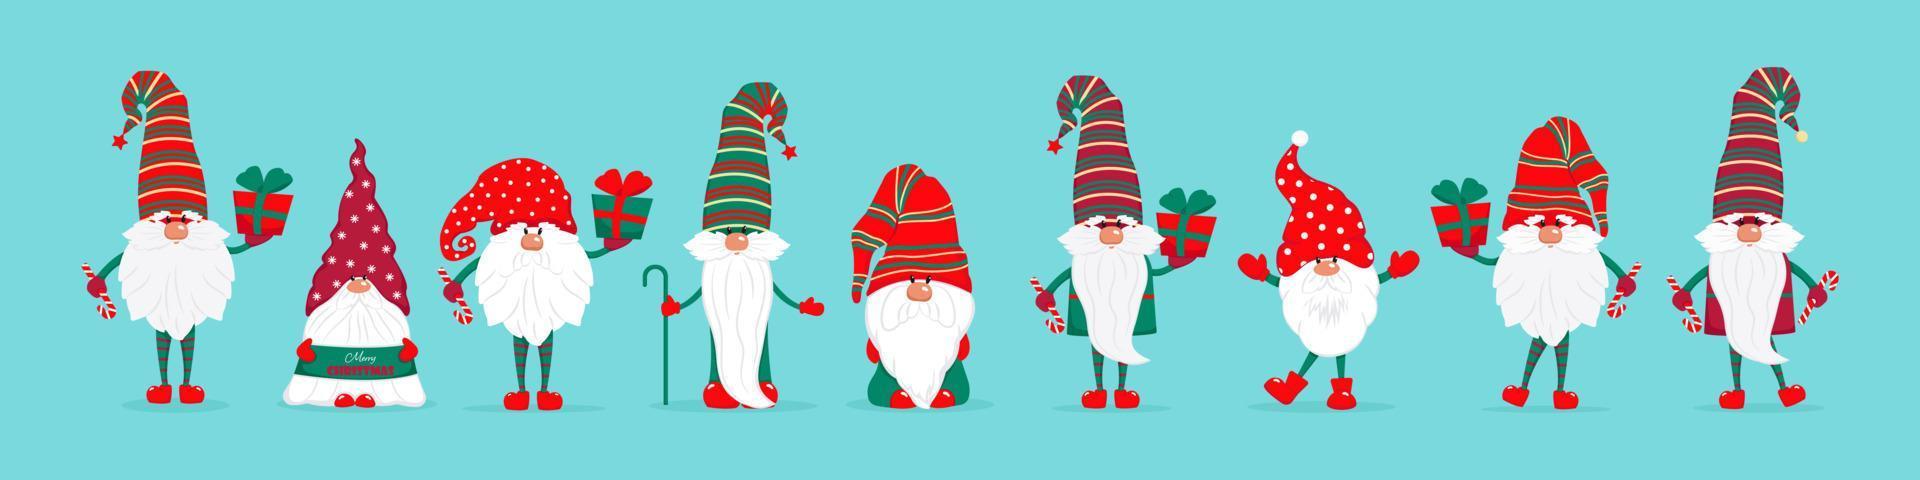 un gran conjunto de gnomos navideños. lindos personajes de cuentos de hadas con regalos y dulces. ilustración vectorial en estilo plano. vector